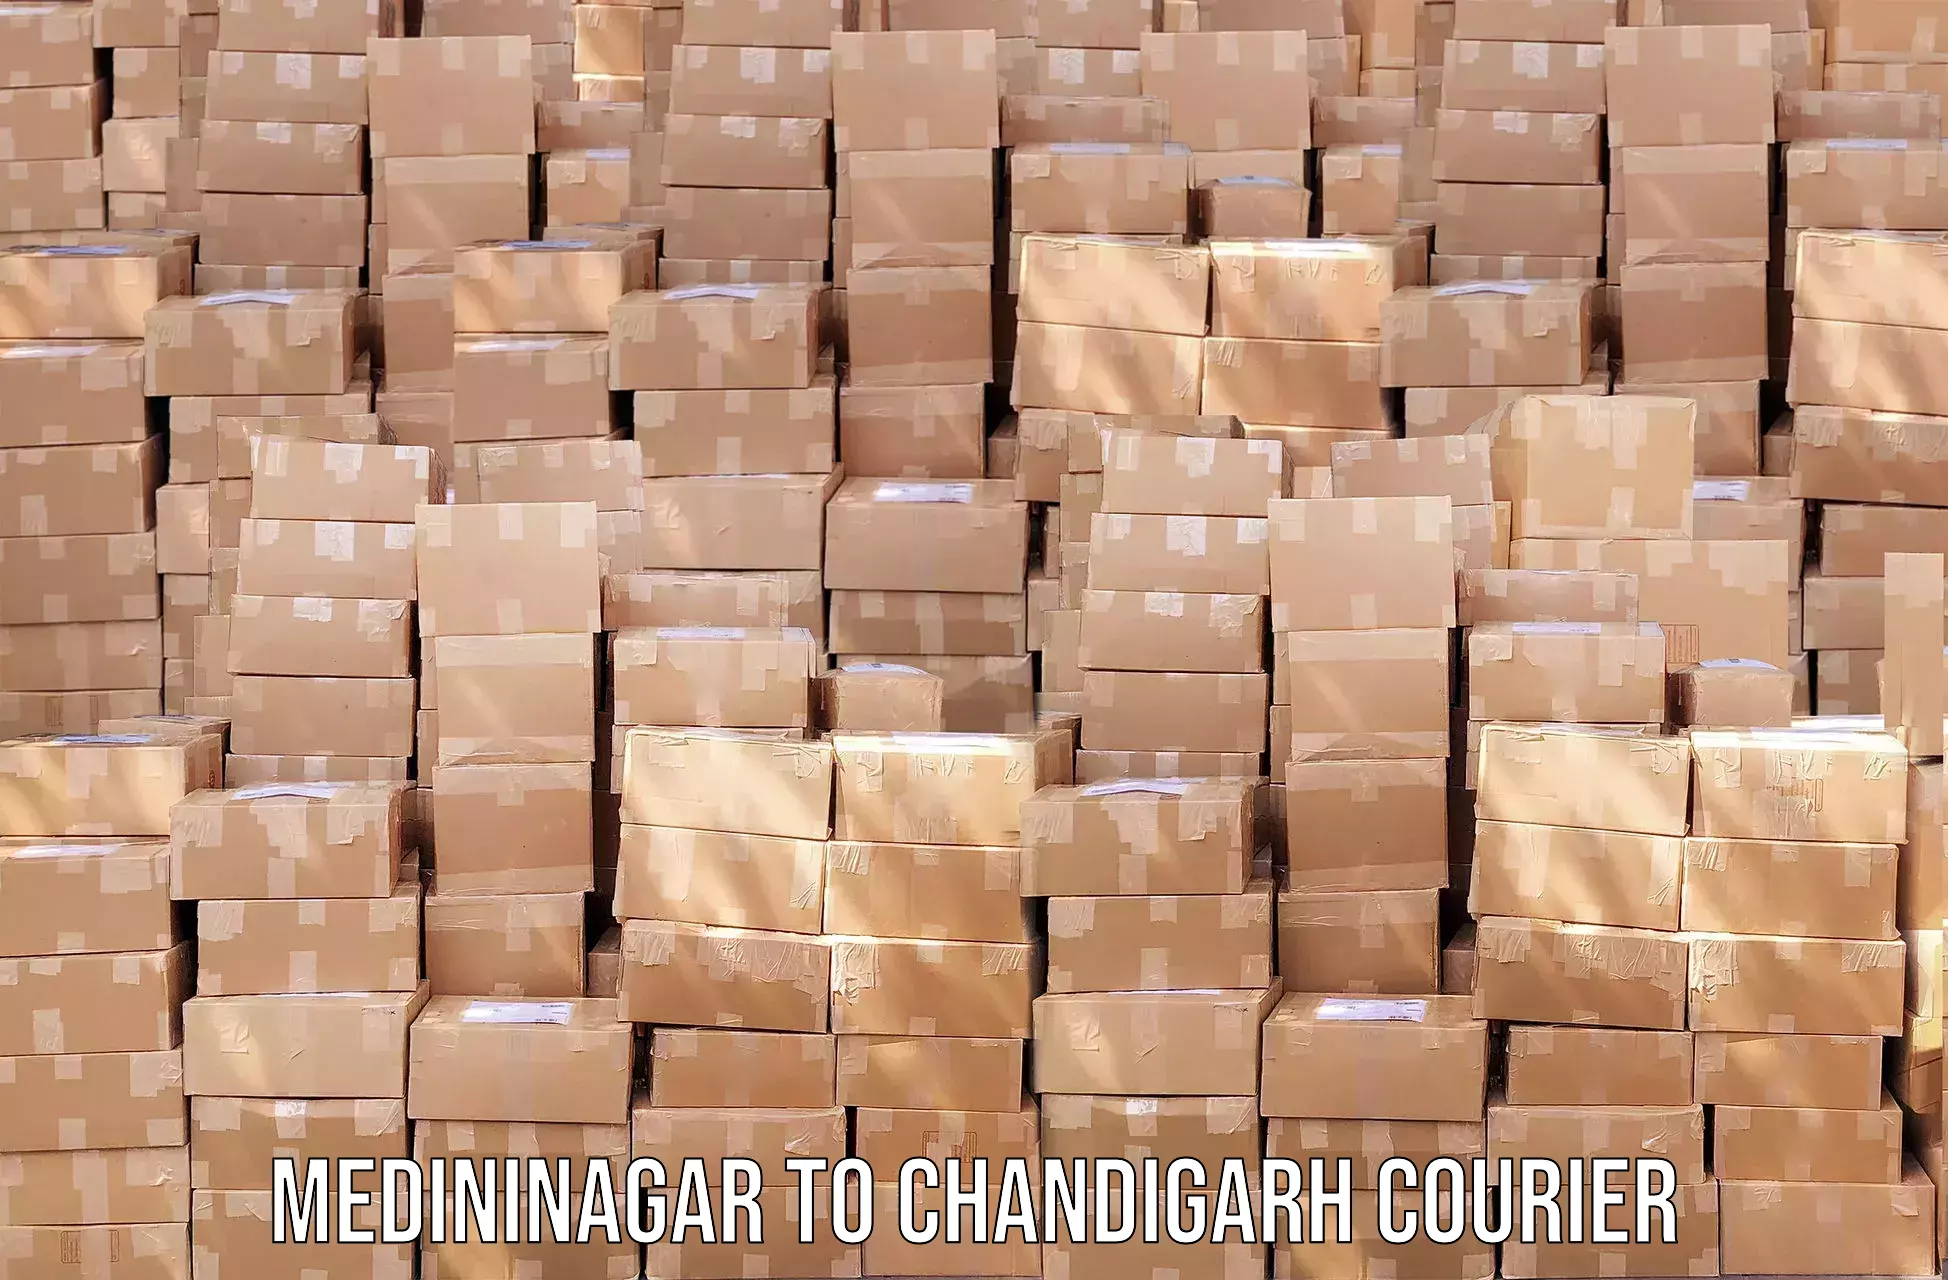 Courier service efficiency Medininagar to Chandigarh